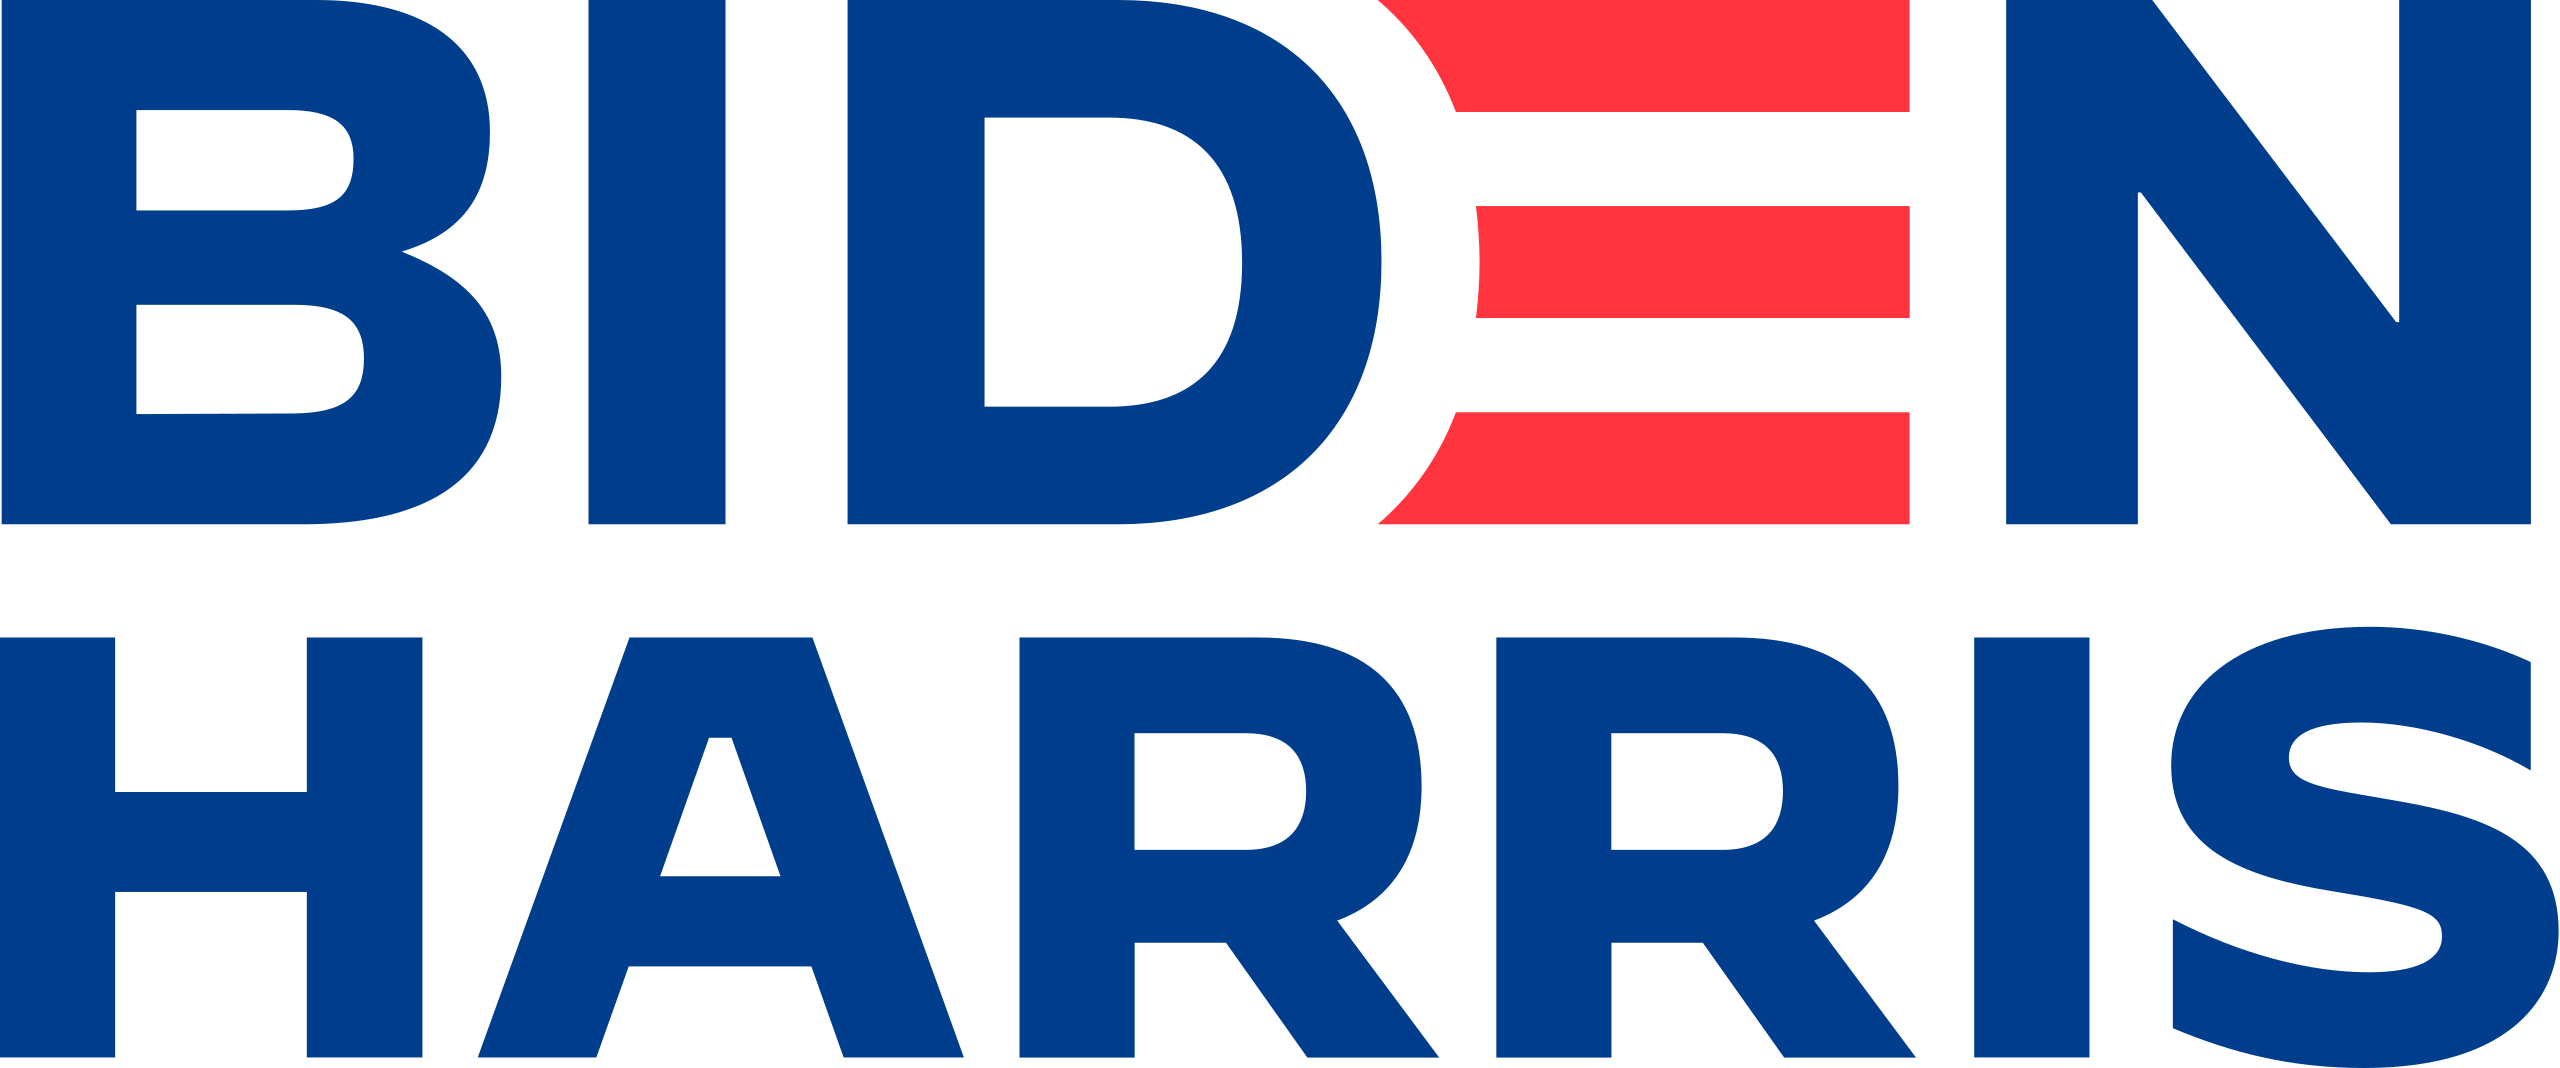 Biden-Harris campaign logo